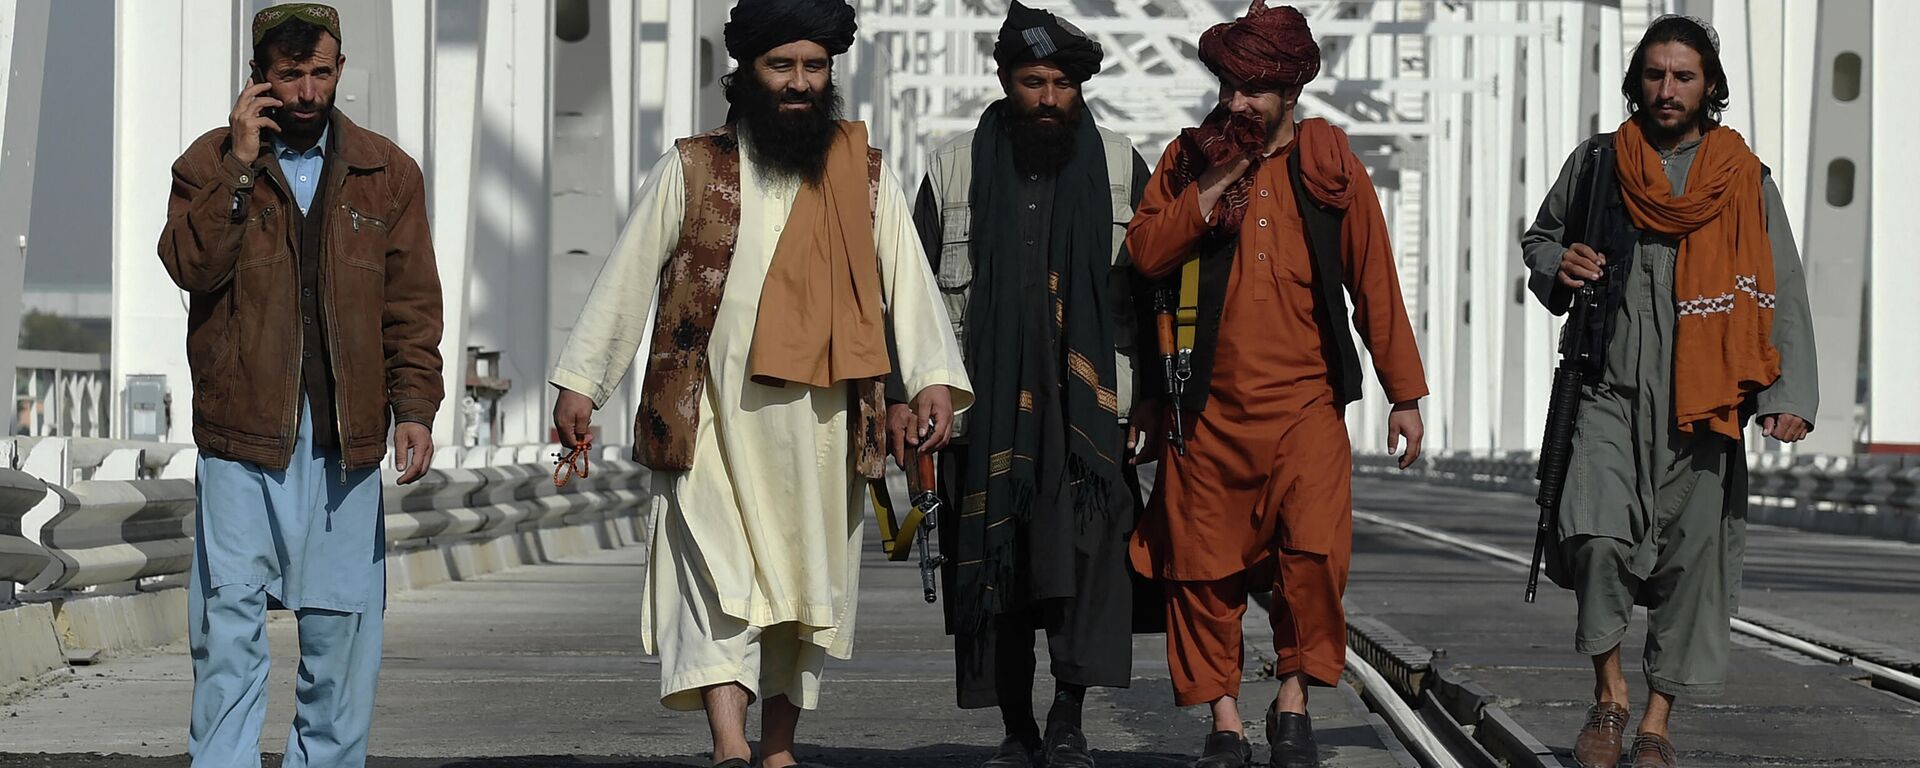 Боевики движения Талибан - Sputnik Узбекистан, 1920, 16.11.2021